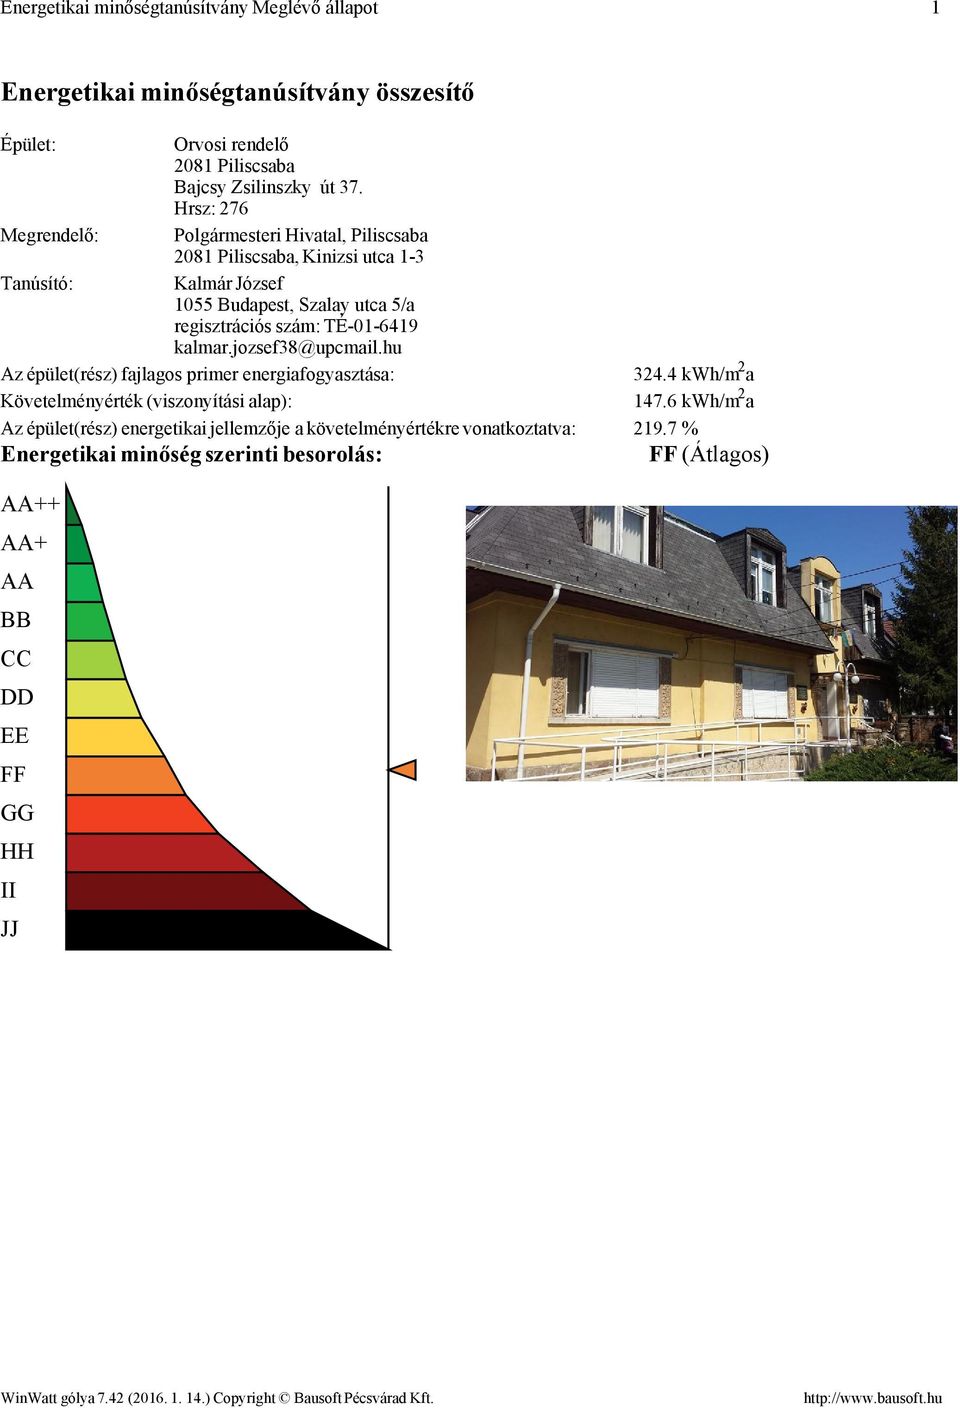 TÉ016419 kalmar.jozsef38@upmail.hu Az épület(rész) fajlagos primer energiafogyasztása: 324.4 kwh/m 2 a Követelményérték (viszonyítási alap): 147.